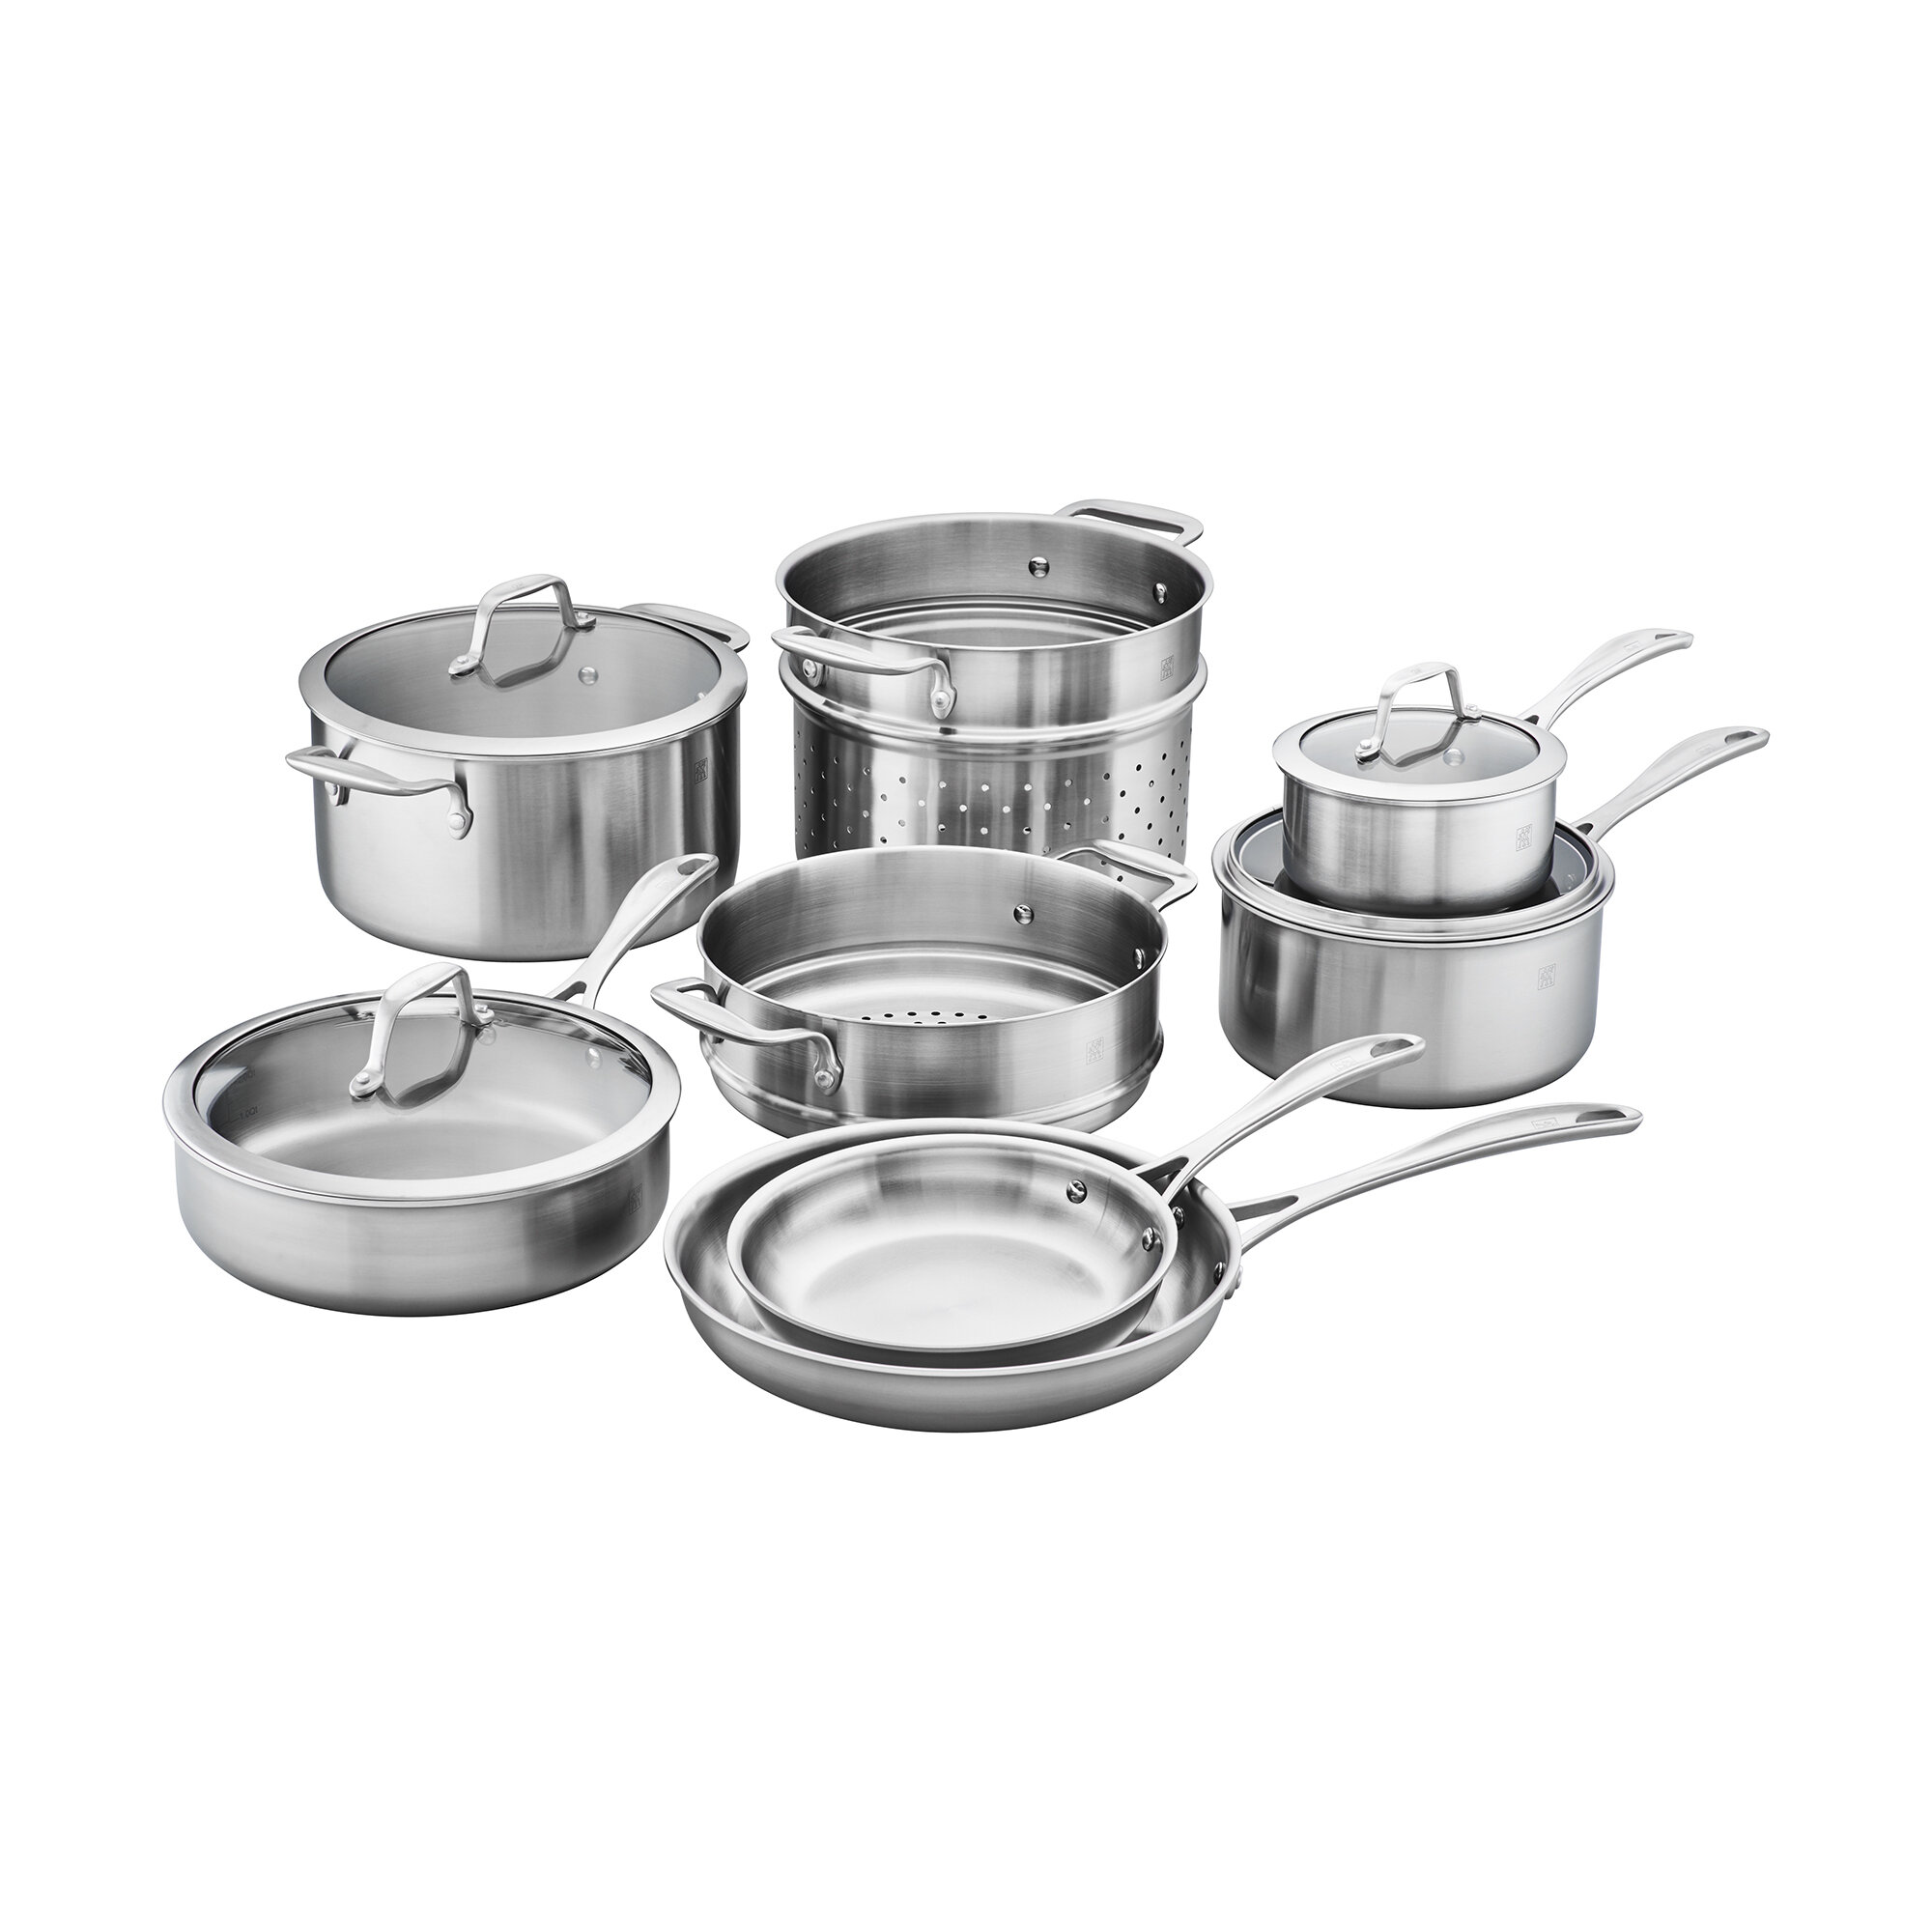 https://assets.wfcdn.com/im/39866062/compr-r85/6135/61350139/zwilling-spirit-3-ply-12-piece-stainless-steel-cookware-set.jpg